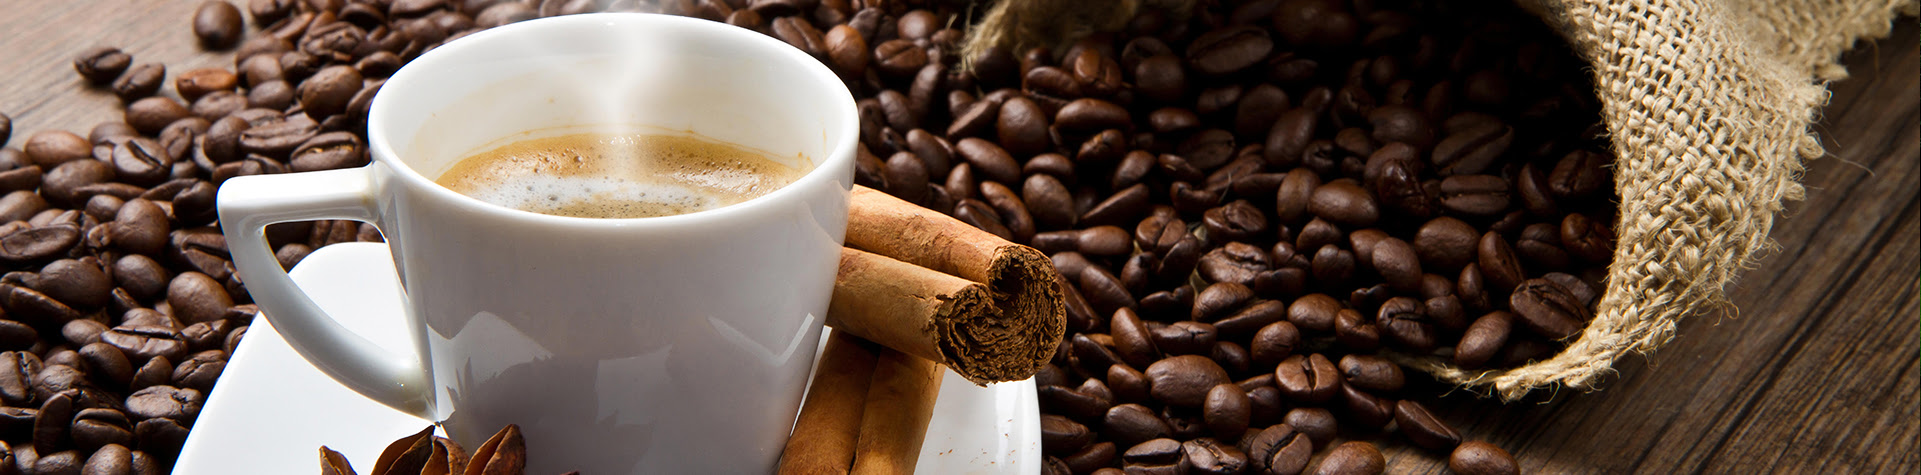 Cómo conservar el café para que no pierda ni aroma ni sabor